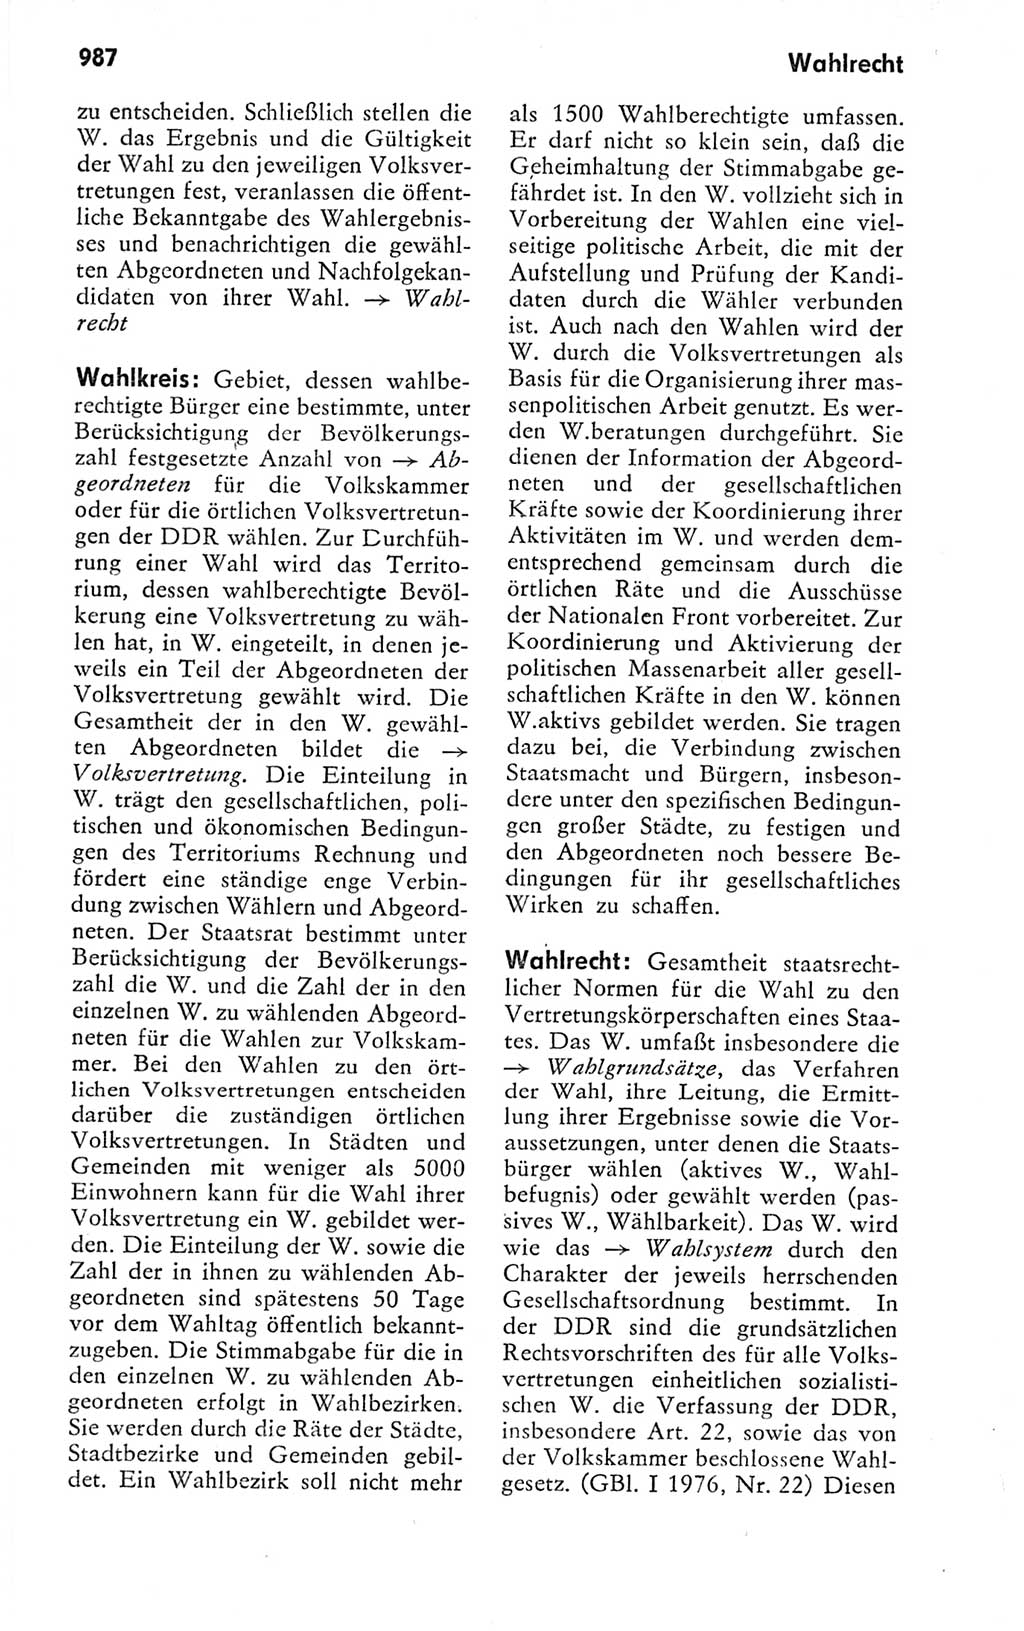 Kleines politisches Wörterbuch [Deutsche Demokratische Republik (DDR)] 1978, Seite 987 (Kl. pol. Wb. DDR 1978, S. 987)